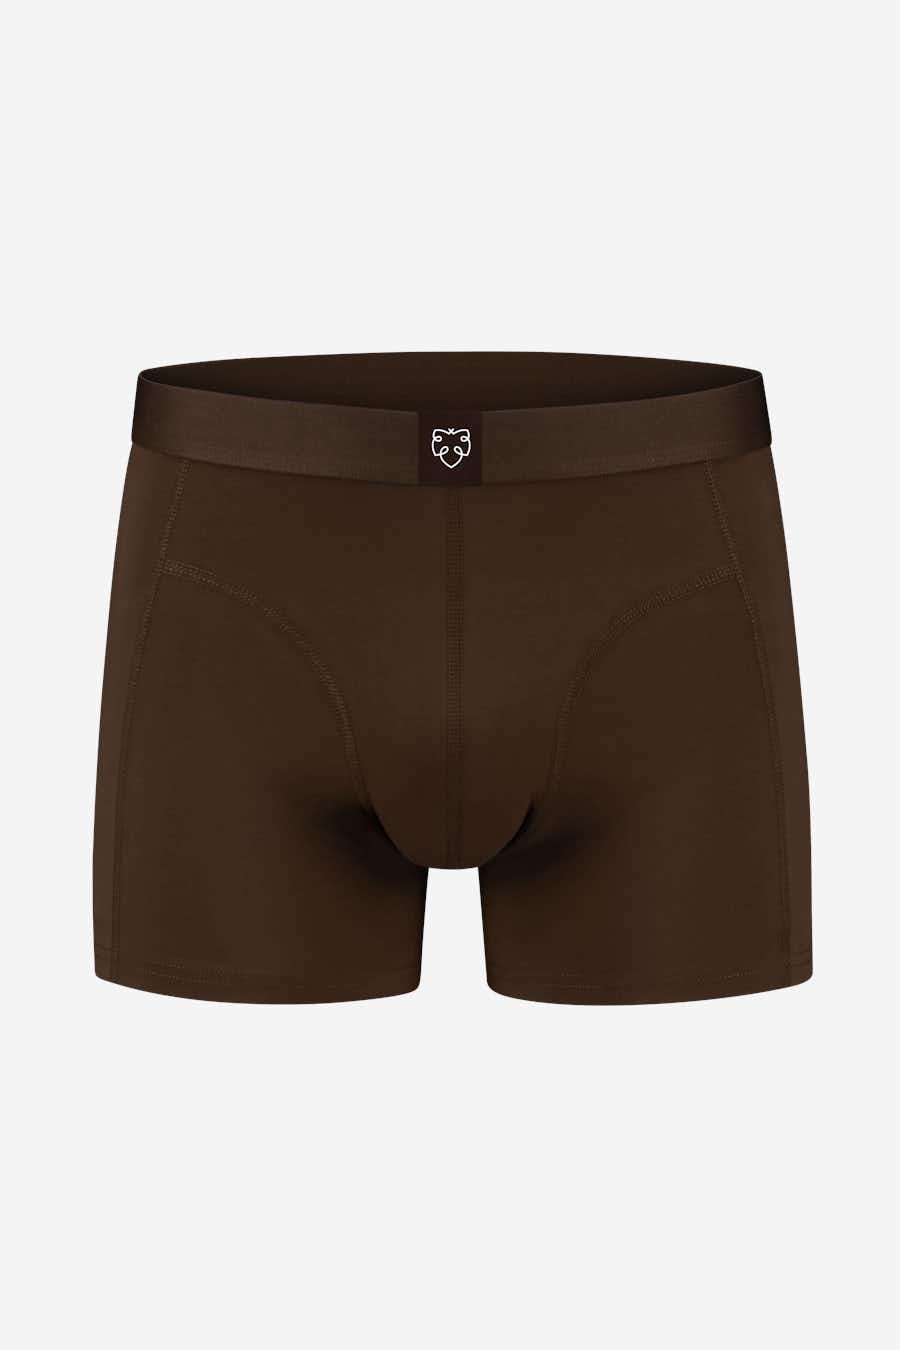 A-dam - BOXERBRIEF ARTHUR Underwears on labotte